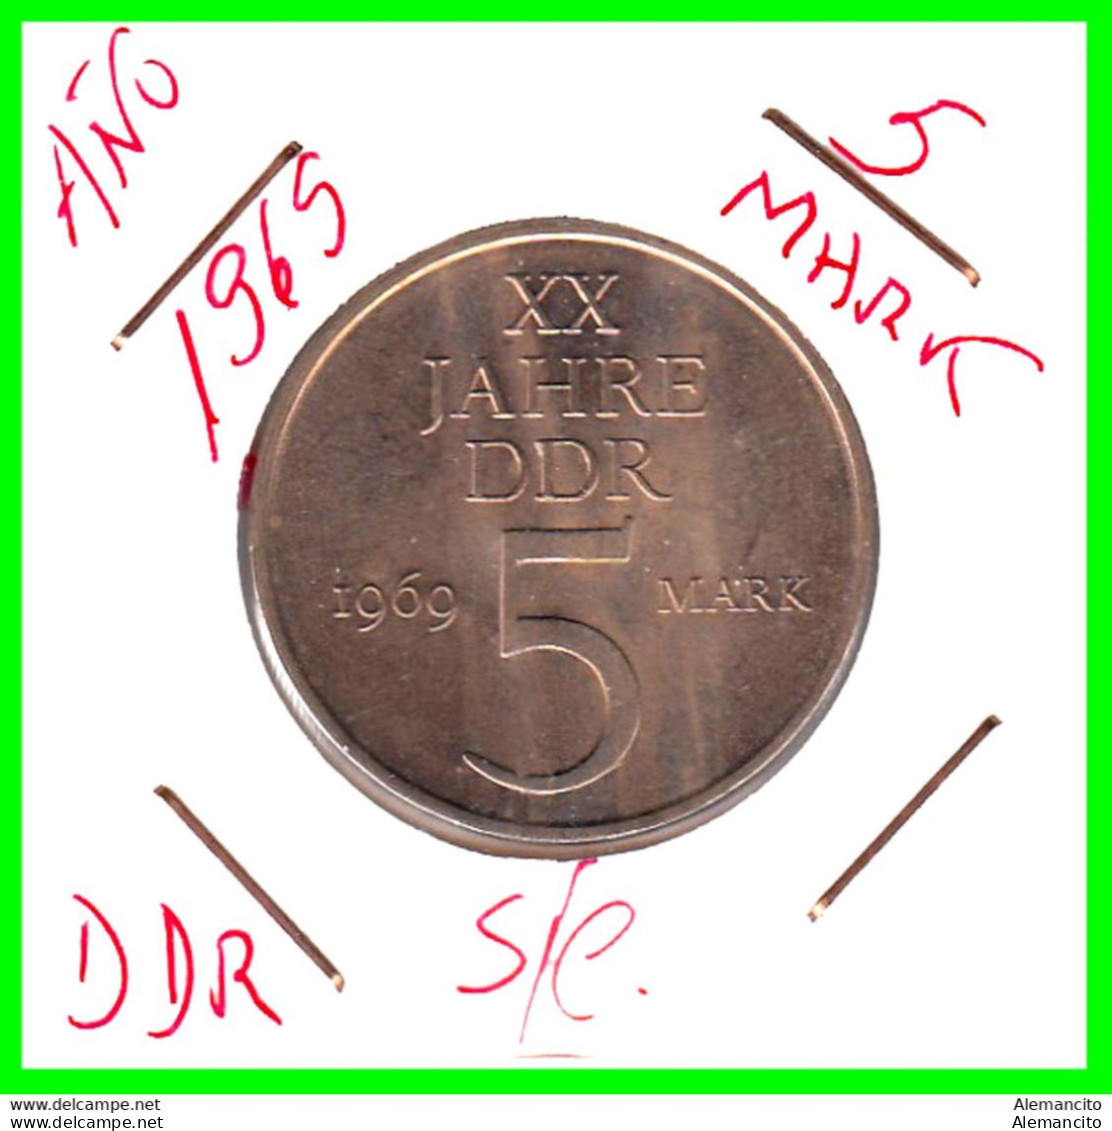 ( GERMANY ) REPUBLICA DEMOCRATICA DE ALEMANIA ( RDA ) MONEDAS DE 5-DM AÑO 1969 MONEDA XX JAHRE DDR DE 29 Mm. - 5 Mark